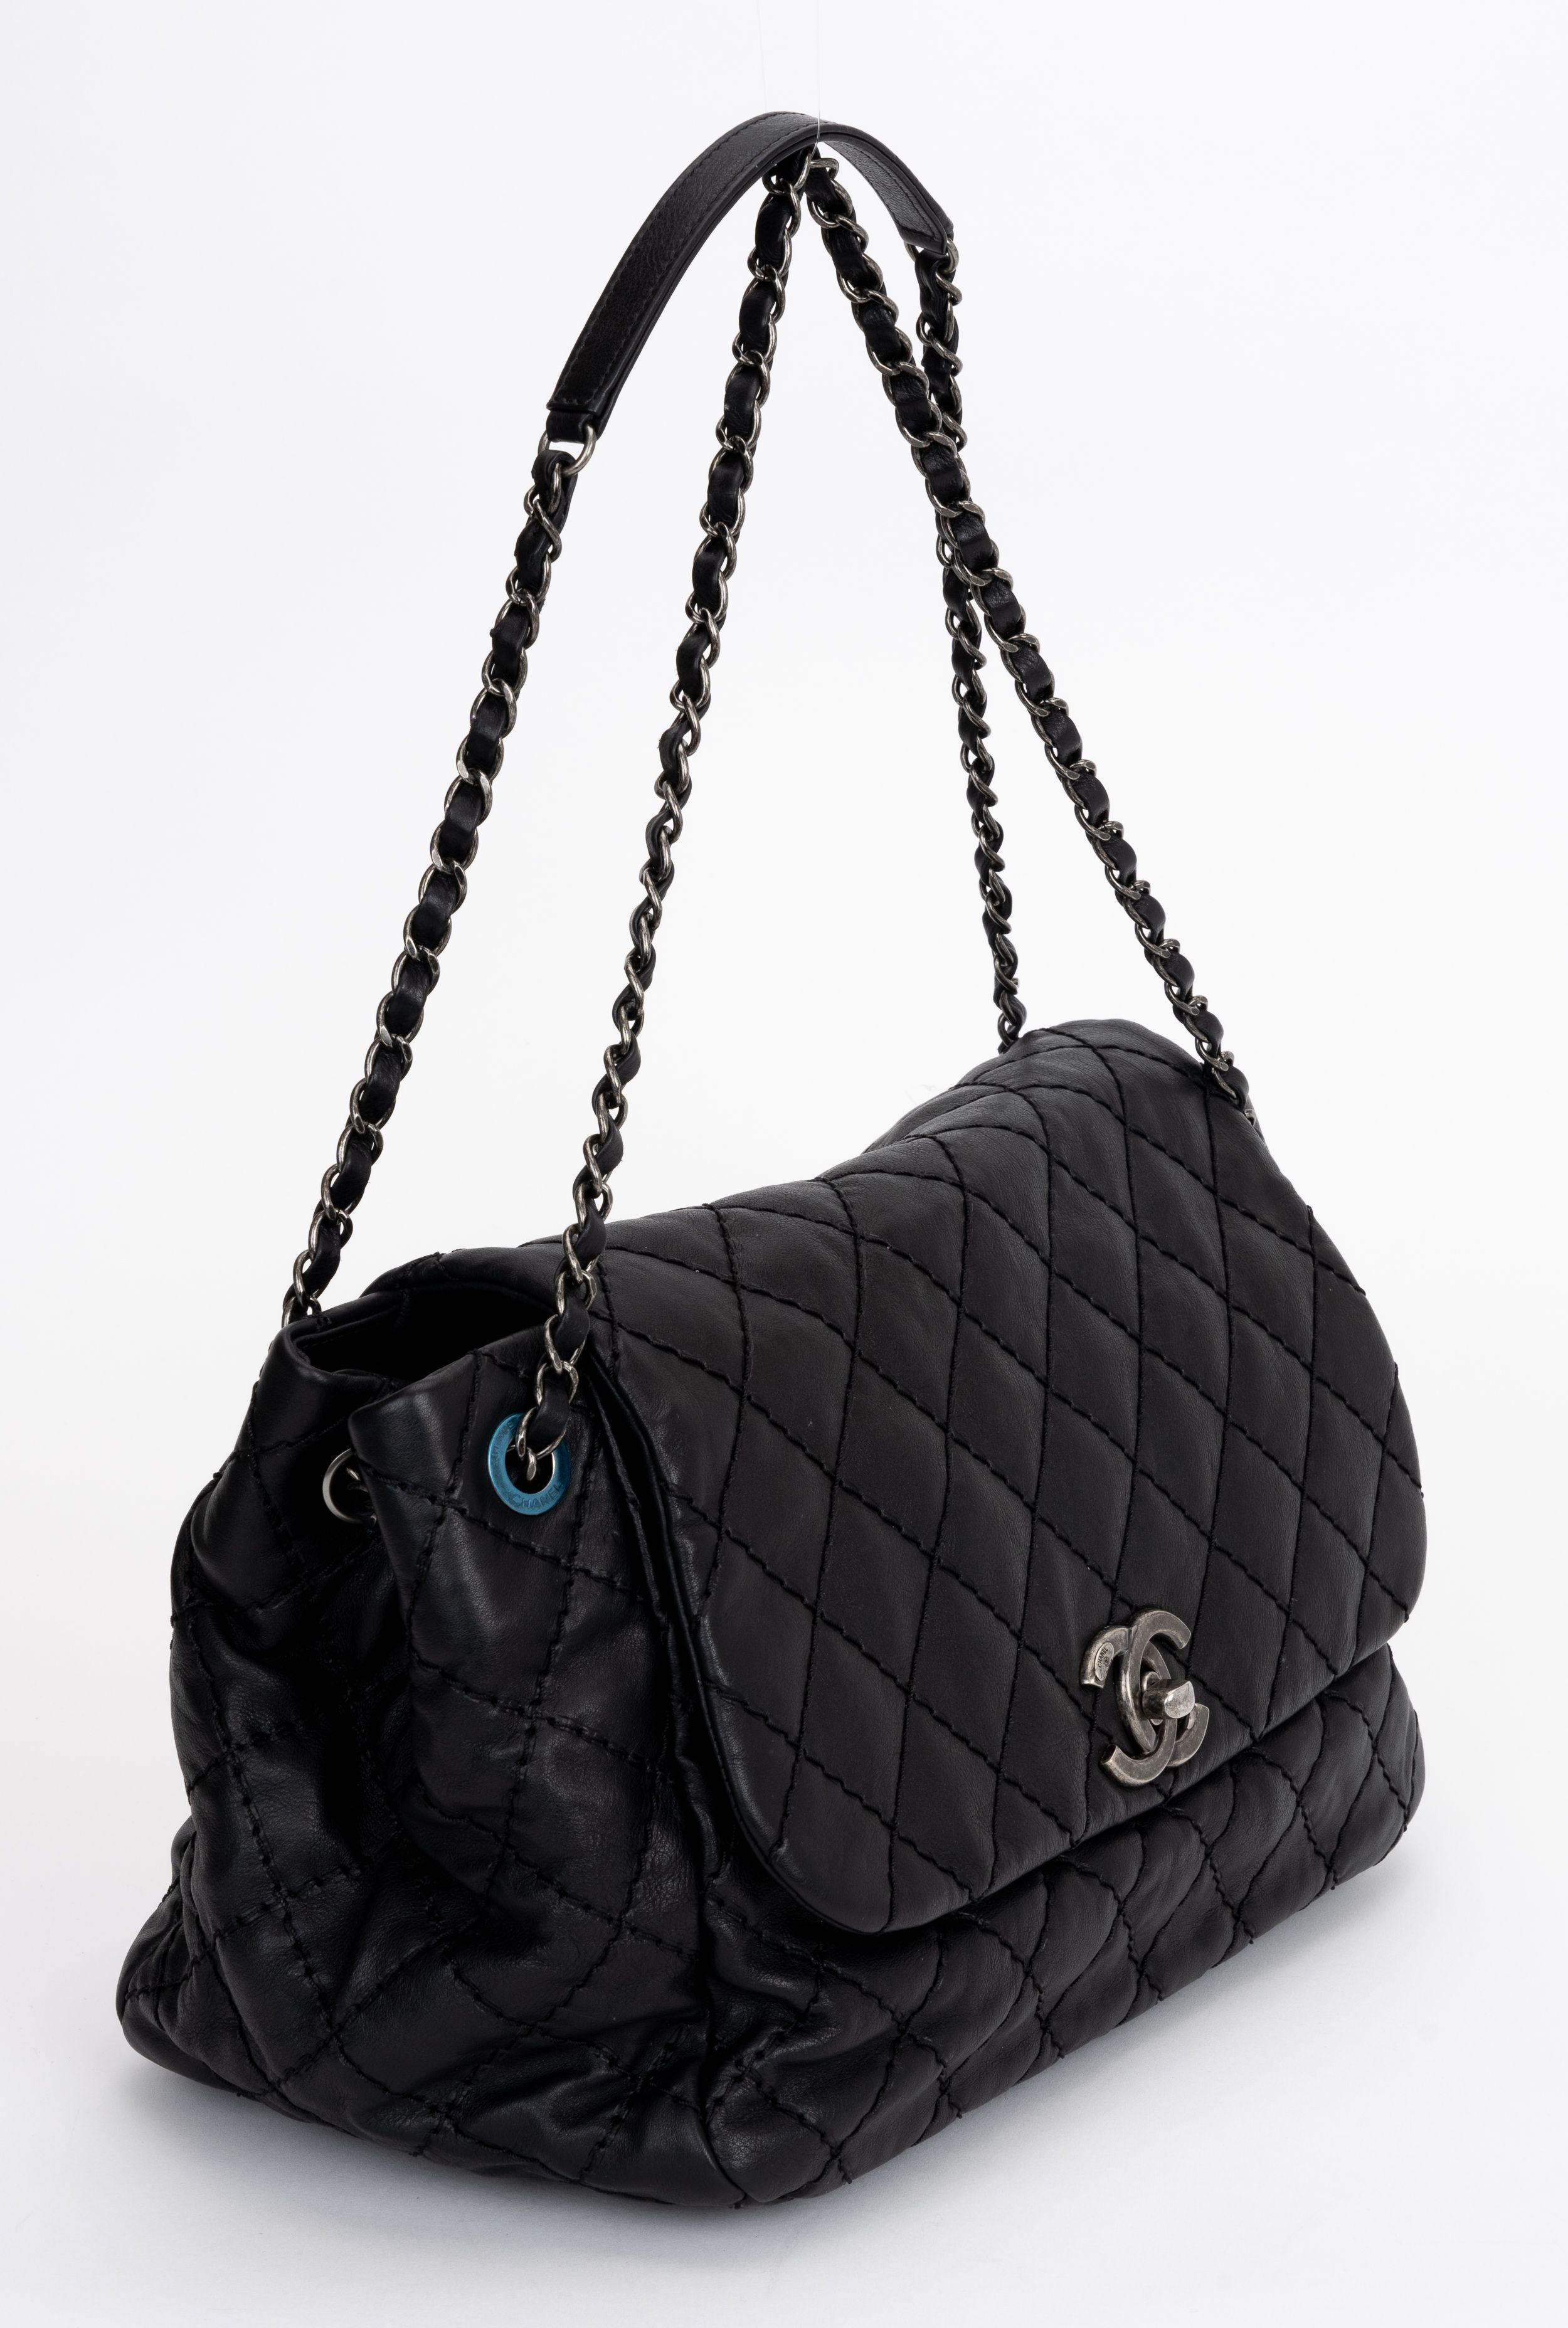 Le sac à bandoulière Chanel Stitch It en cuir de veau est doté d'une poignée entrelacée de cuir et de chaîne et d'une fermeture à cadenas CC. Une poche intérieure zippée. Jamais utilisé, plastique sur la quincaillerie.
Epaule de 9